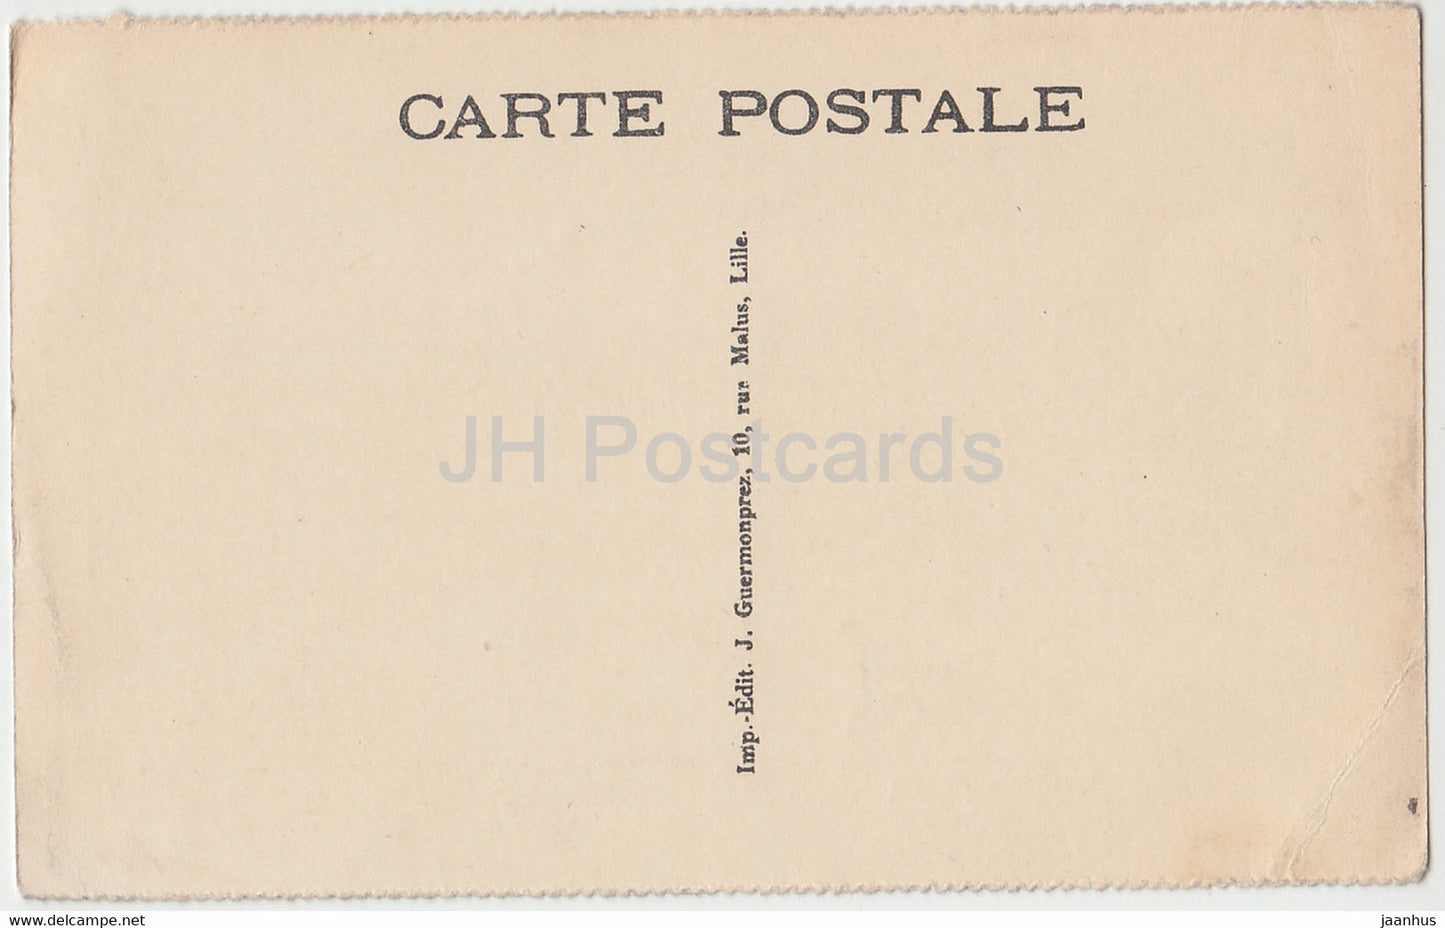 Roubaix - La Grand Place et l'Avenue de la Gare - tram - old postcard - France - unused